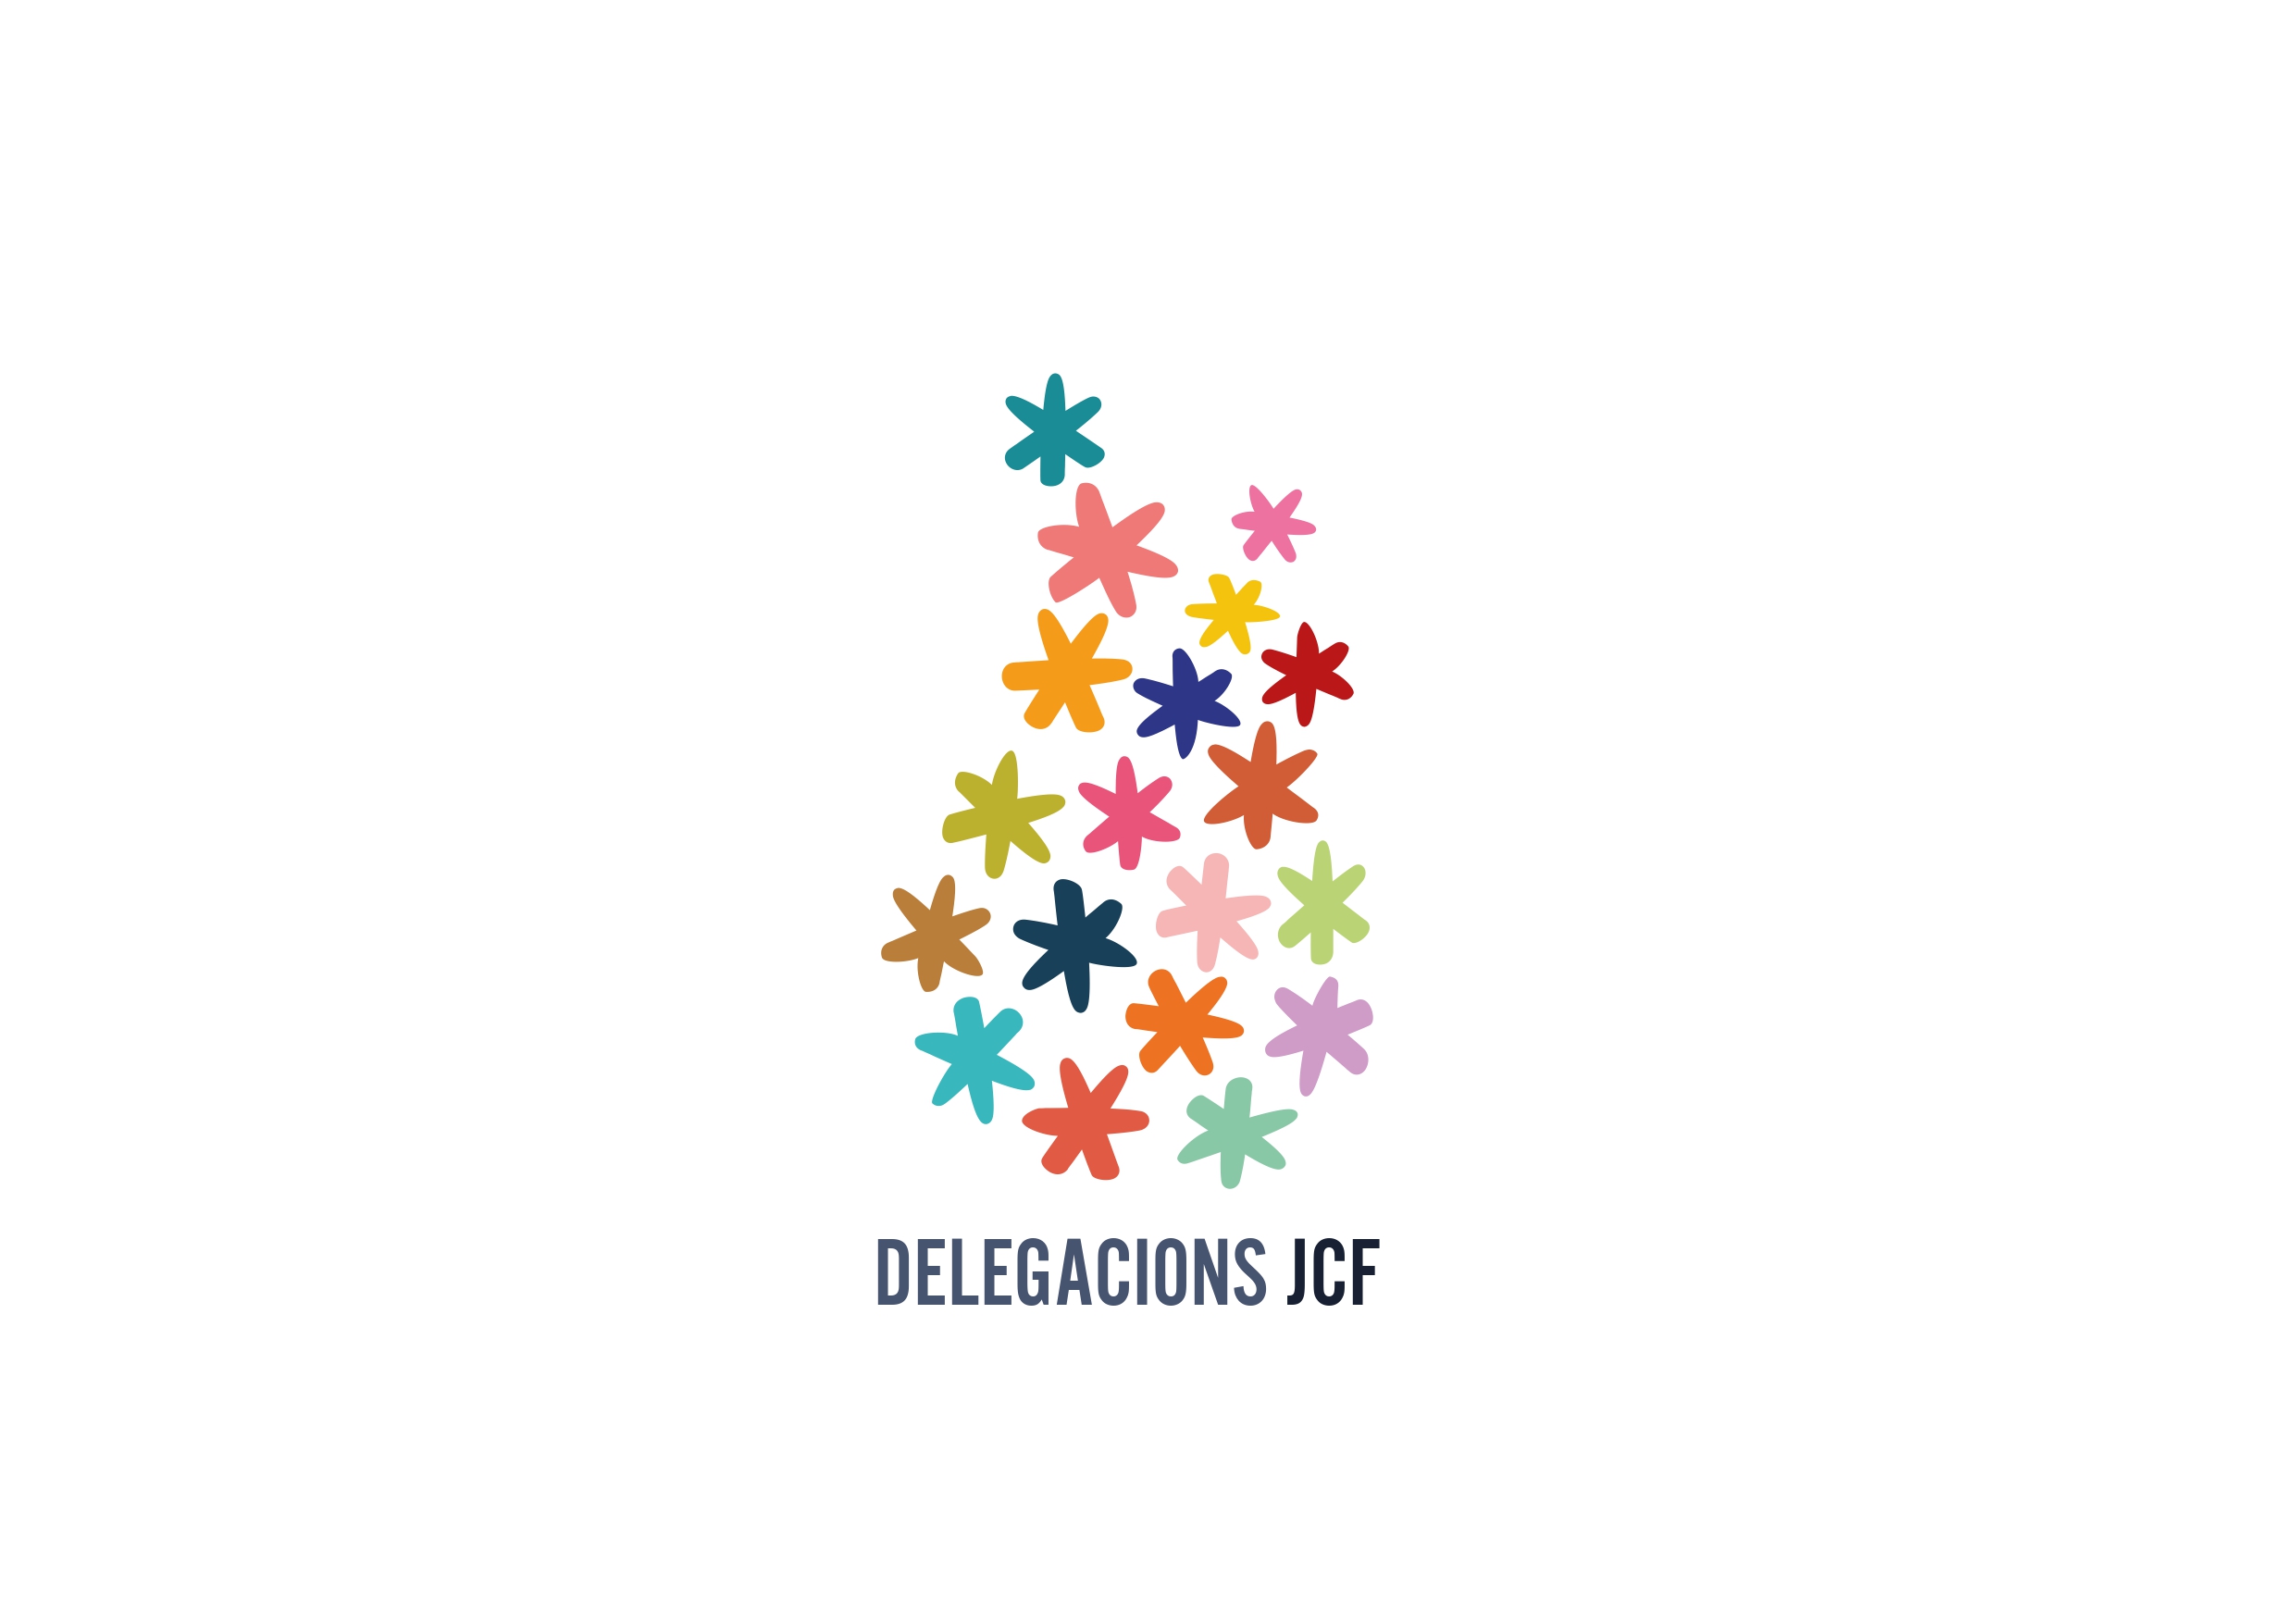 Les delegacions de JCF estrenen imatge gràfica